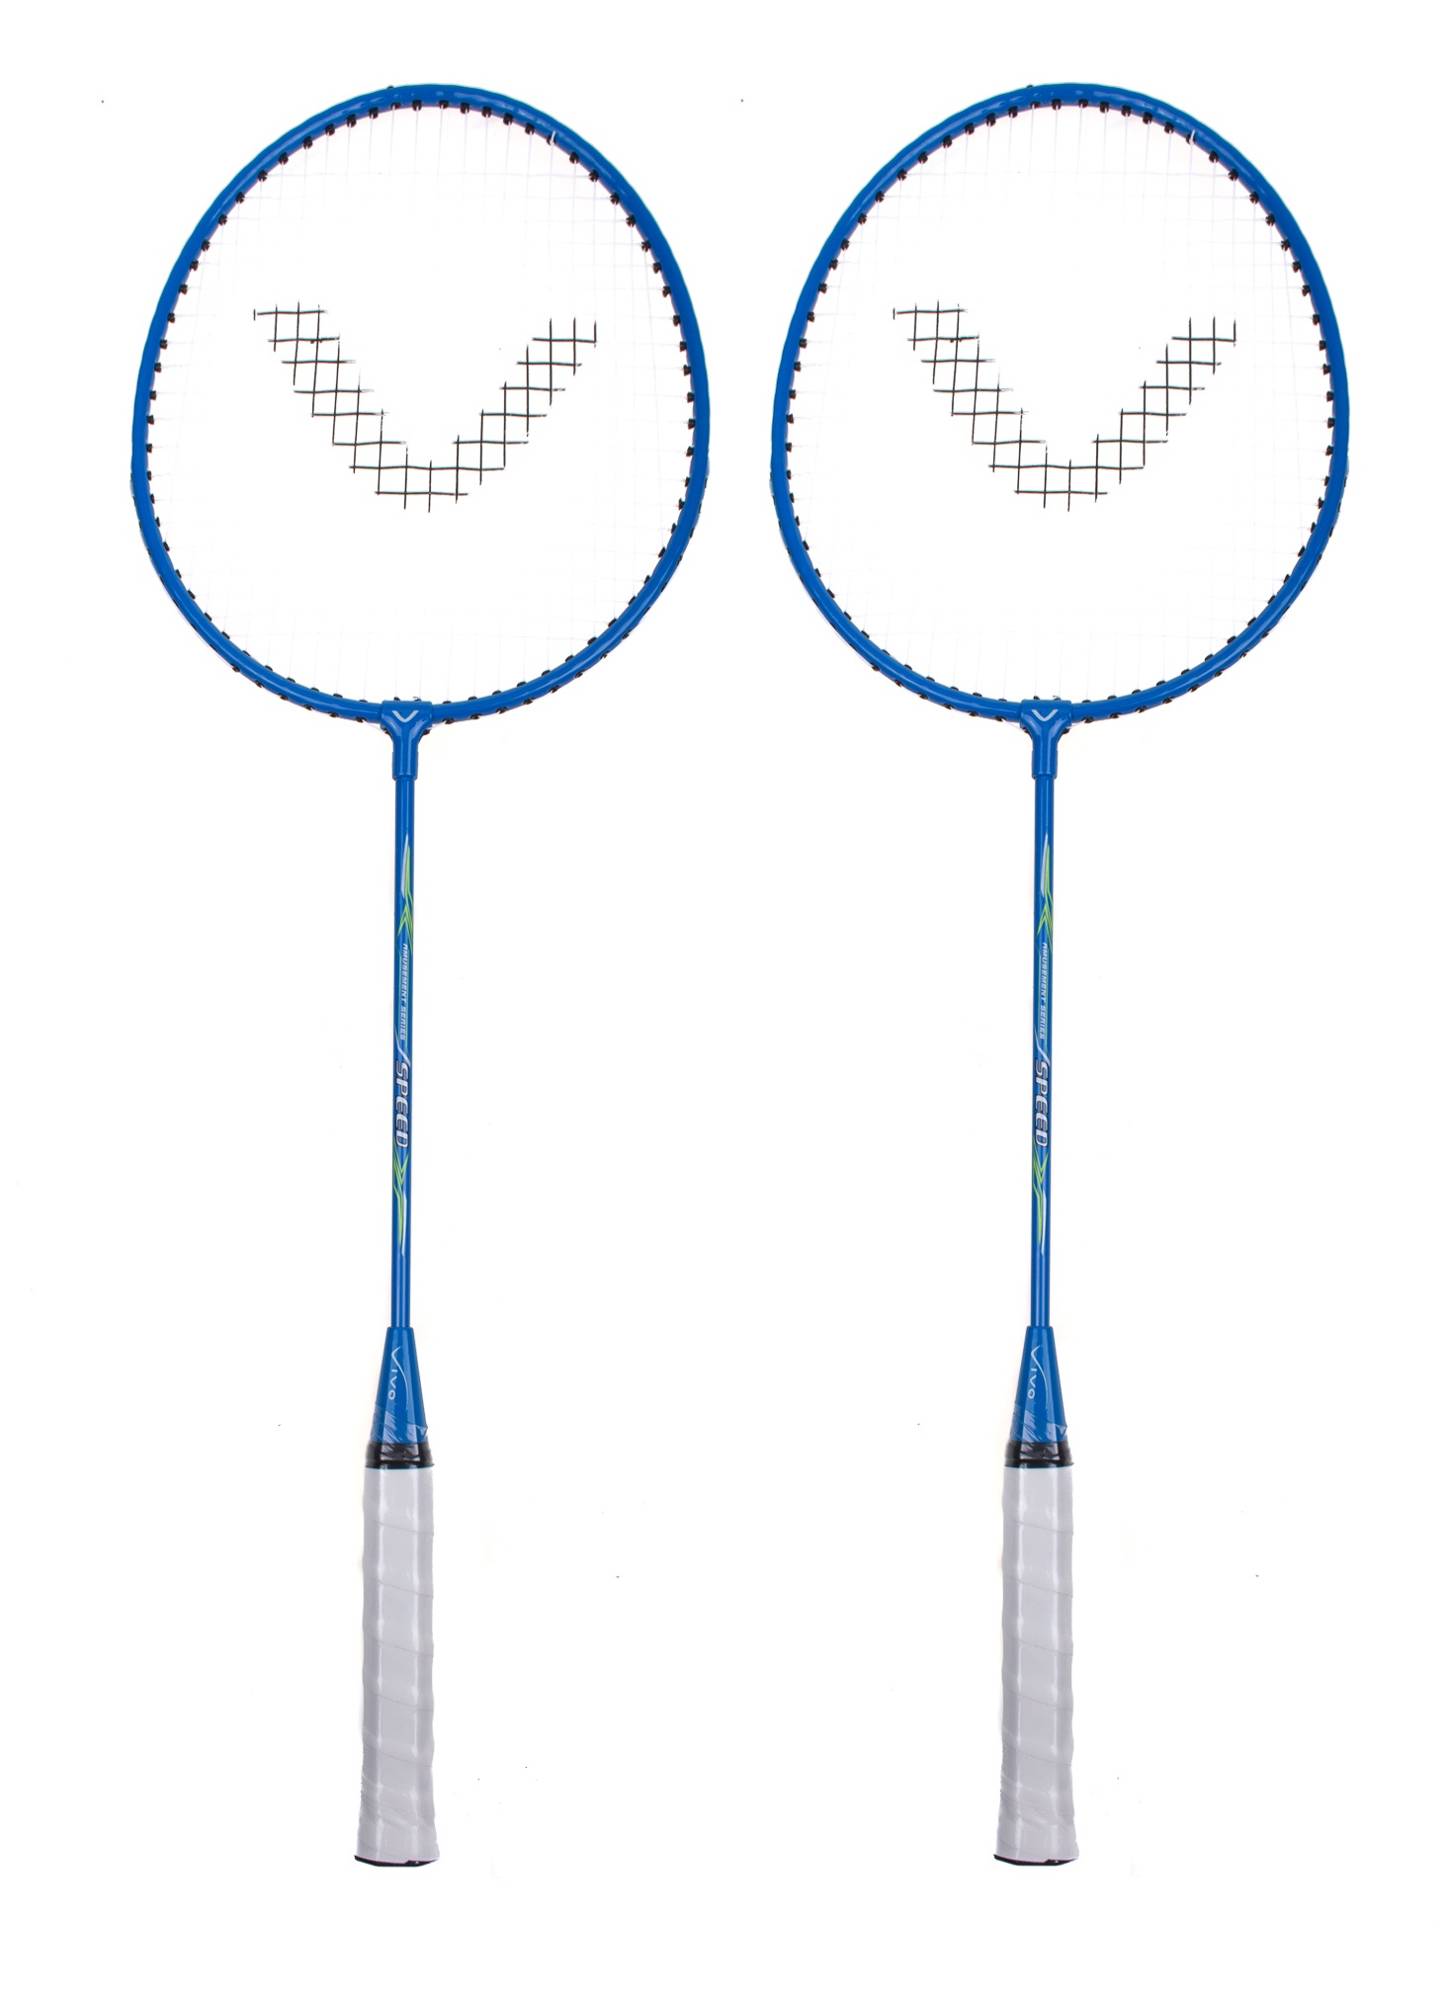 Badminton Vivo zestaw 2-rakietki Speed blue-white